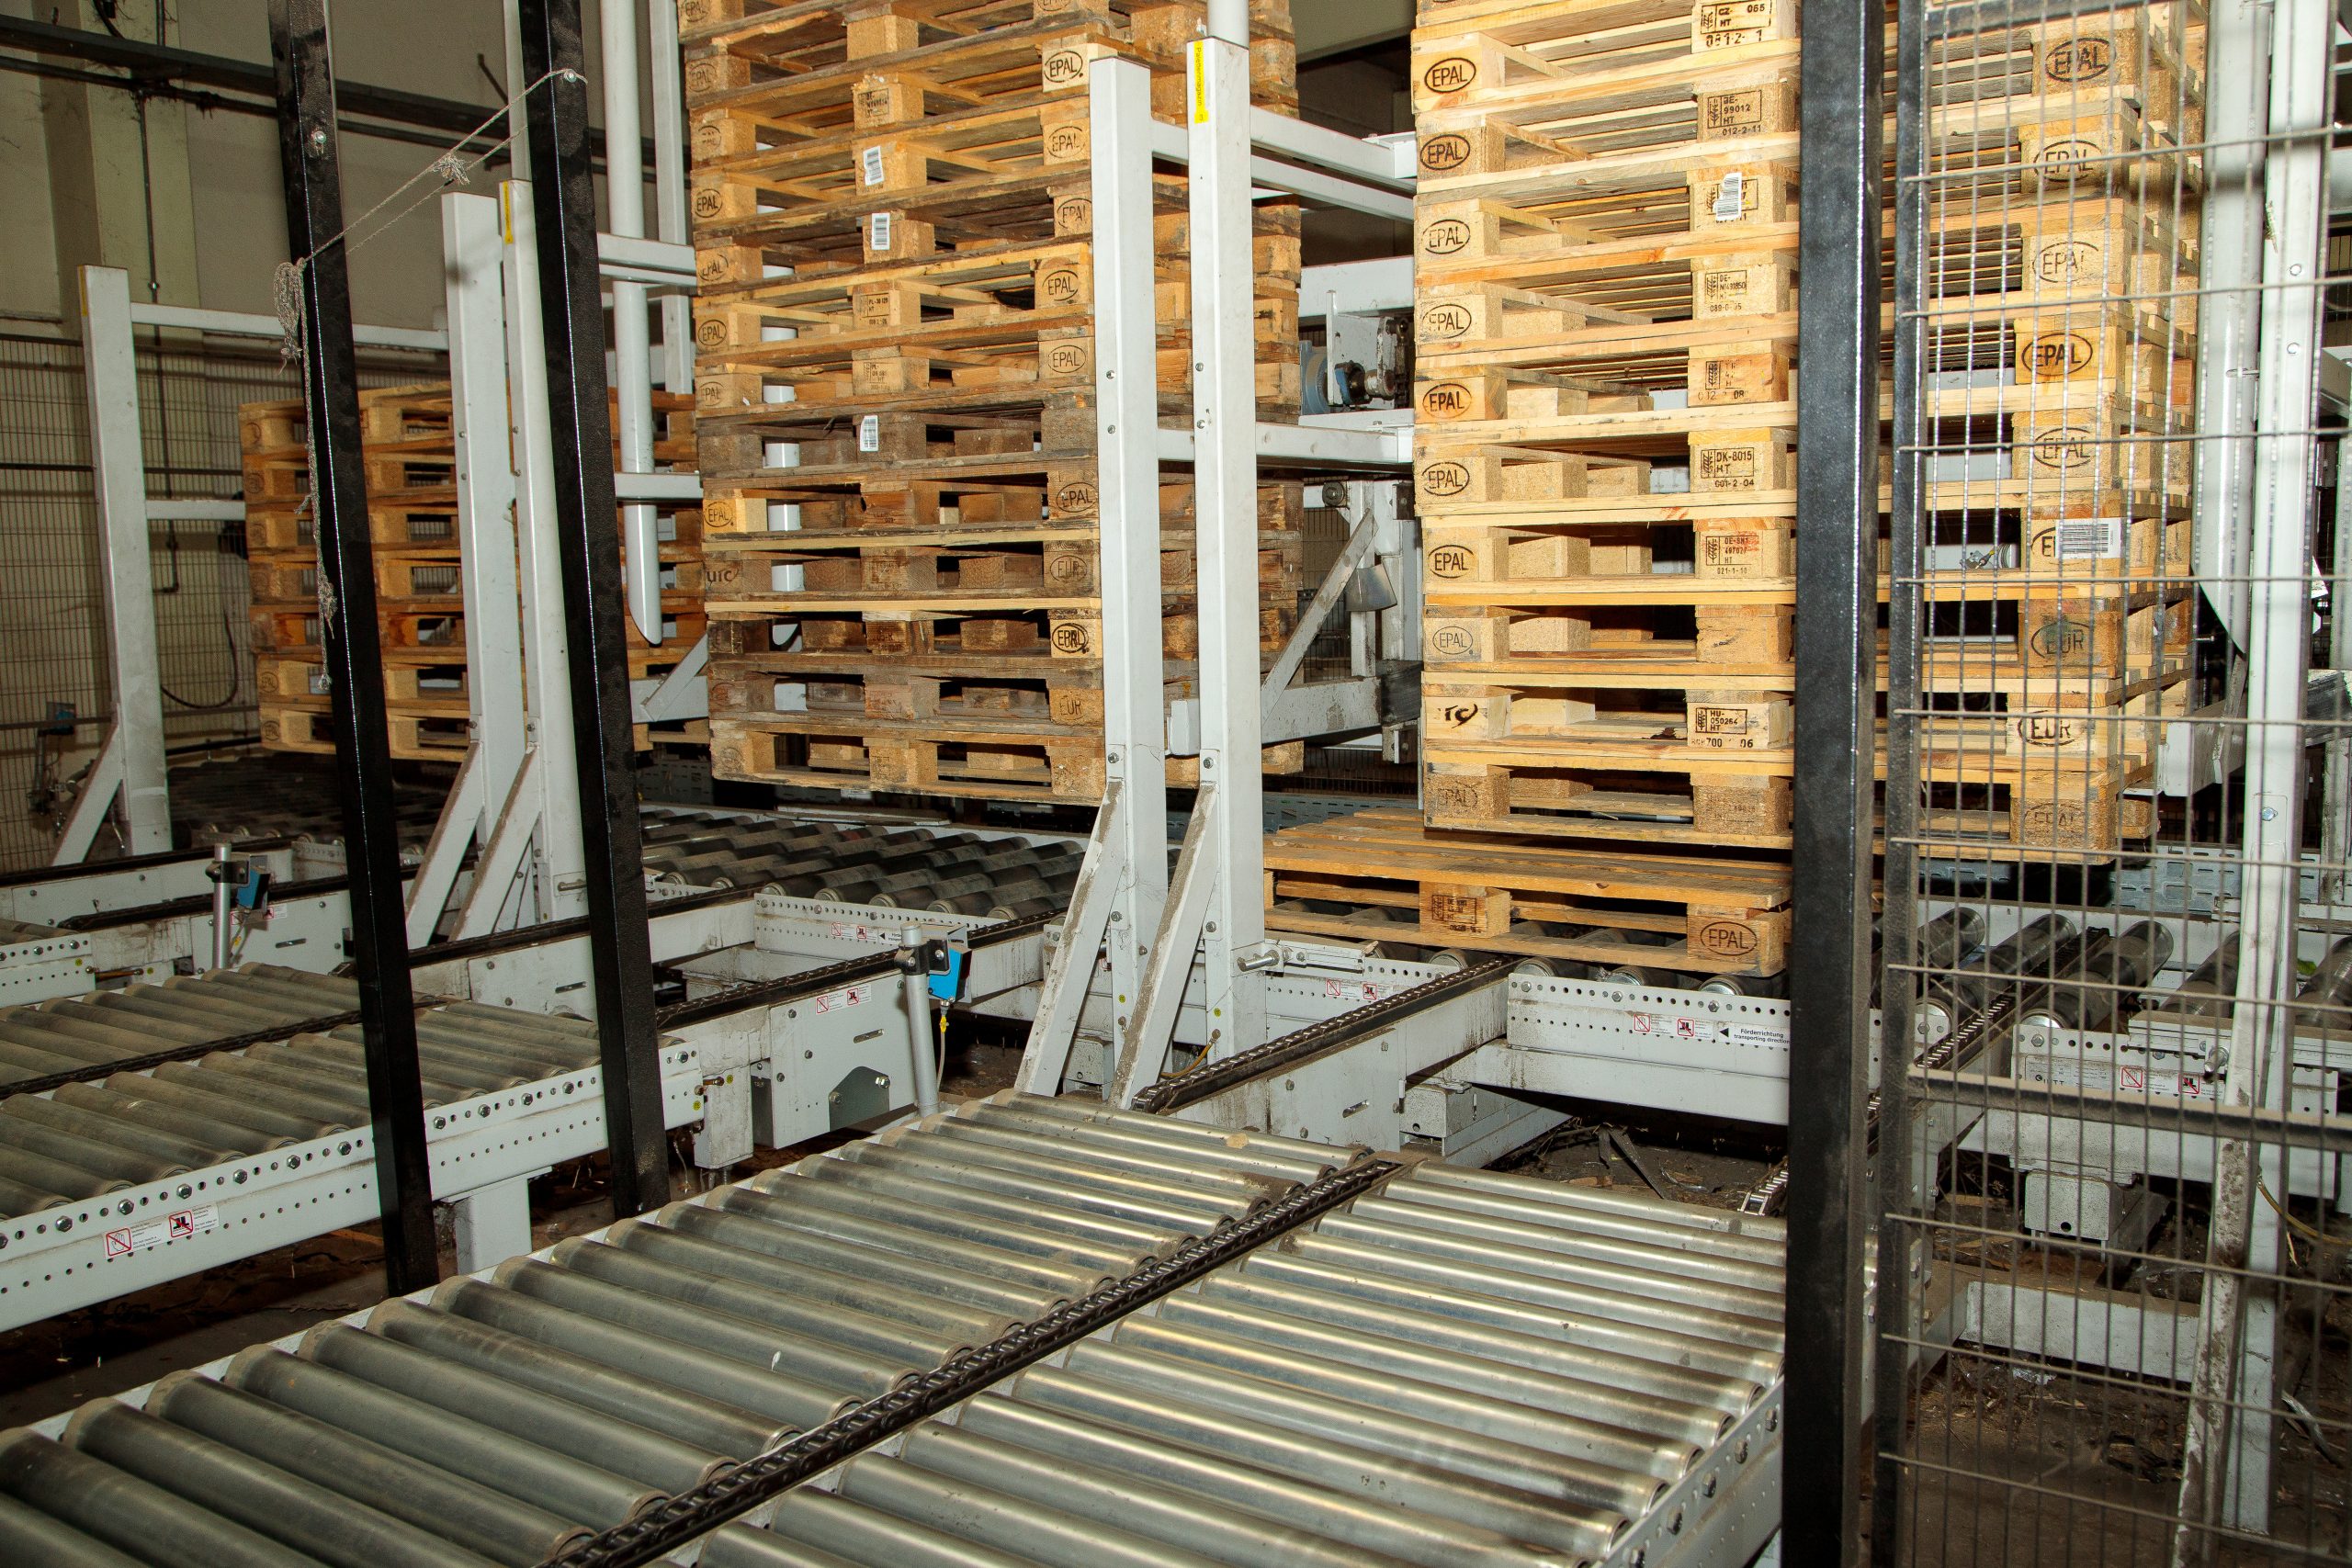 Pallet sorting machine at Brekner